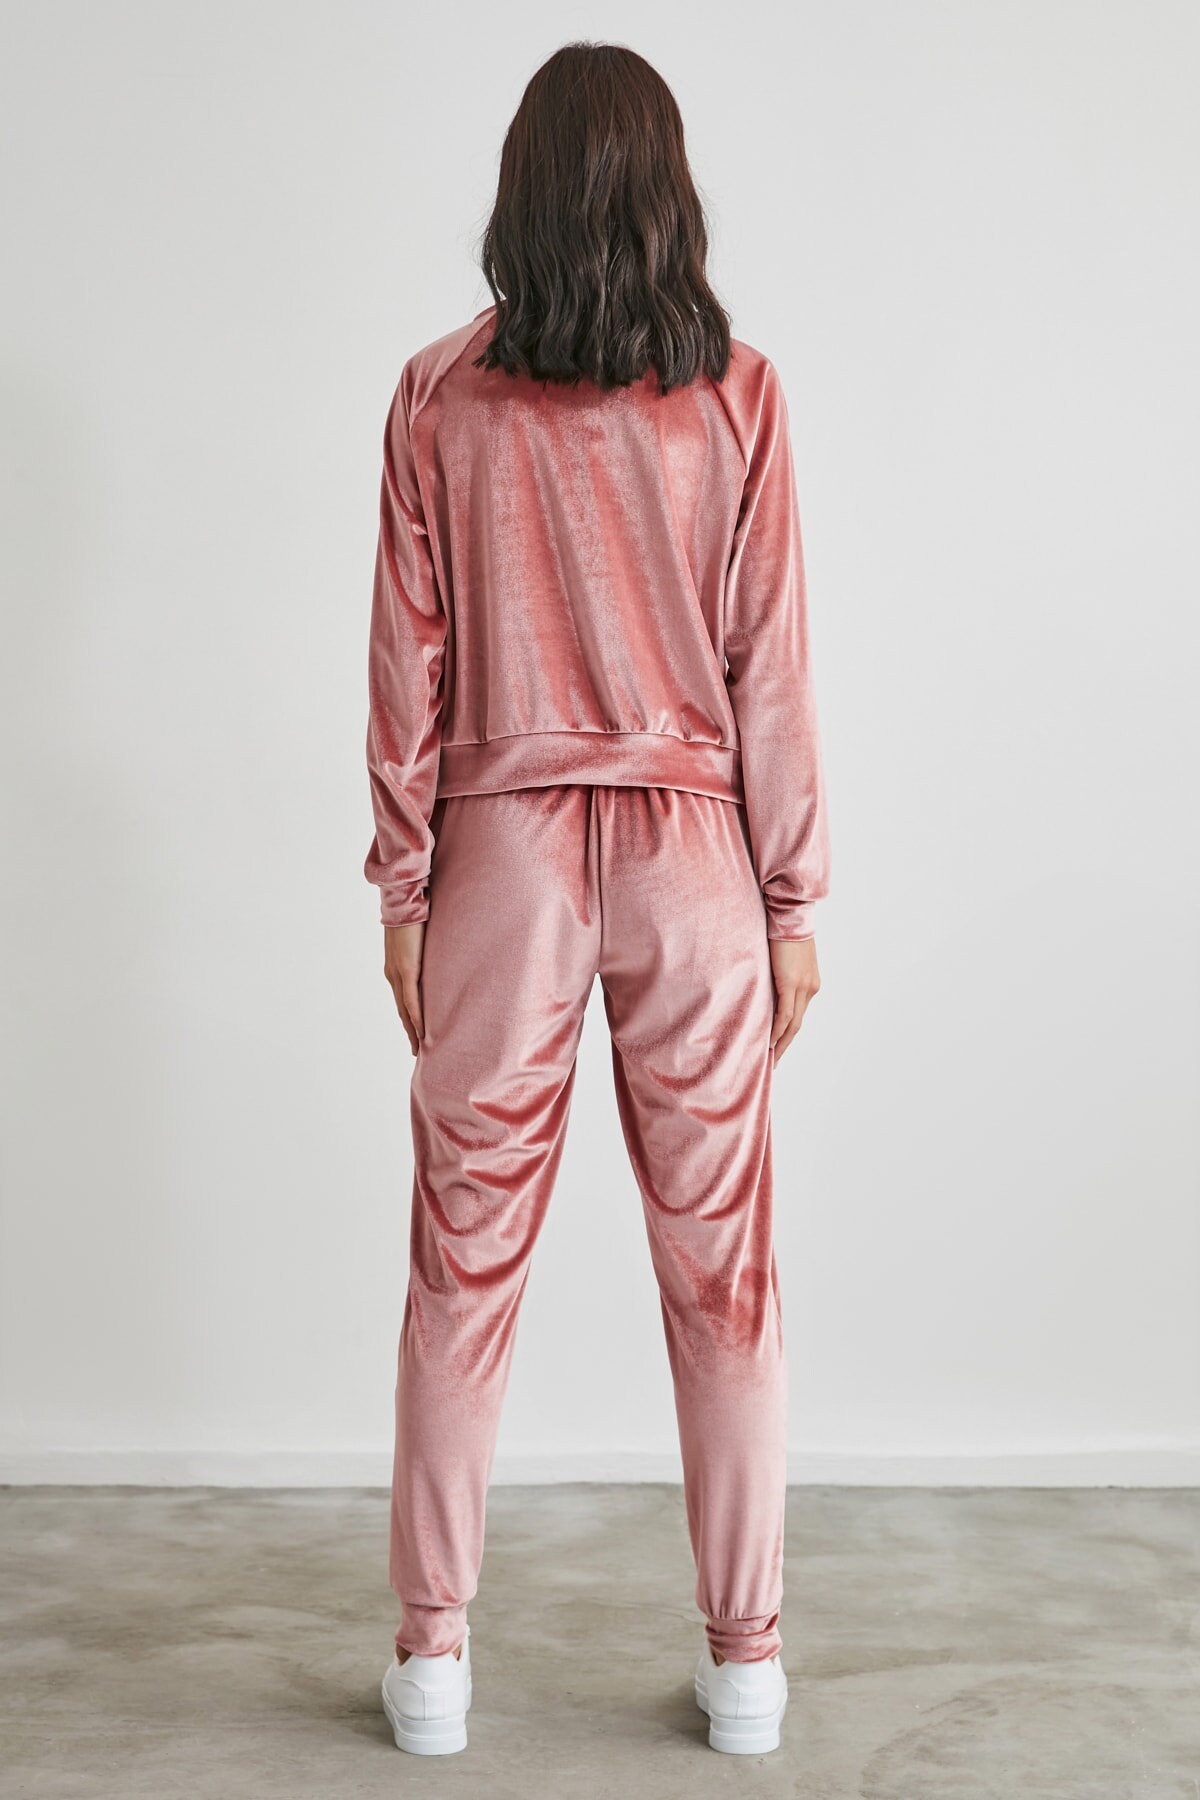 Dusty pink stylish Velvet pajama set for women Dried Rose | Etsy